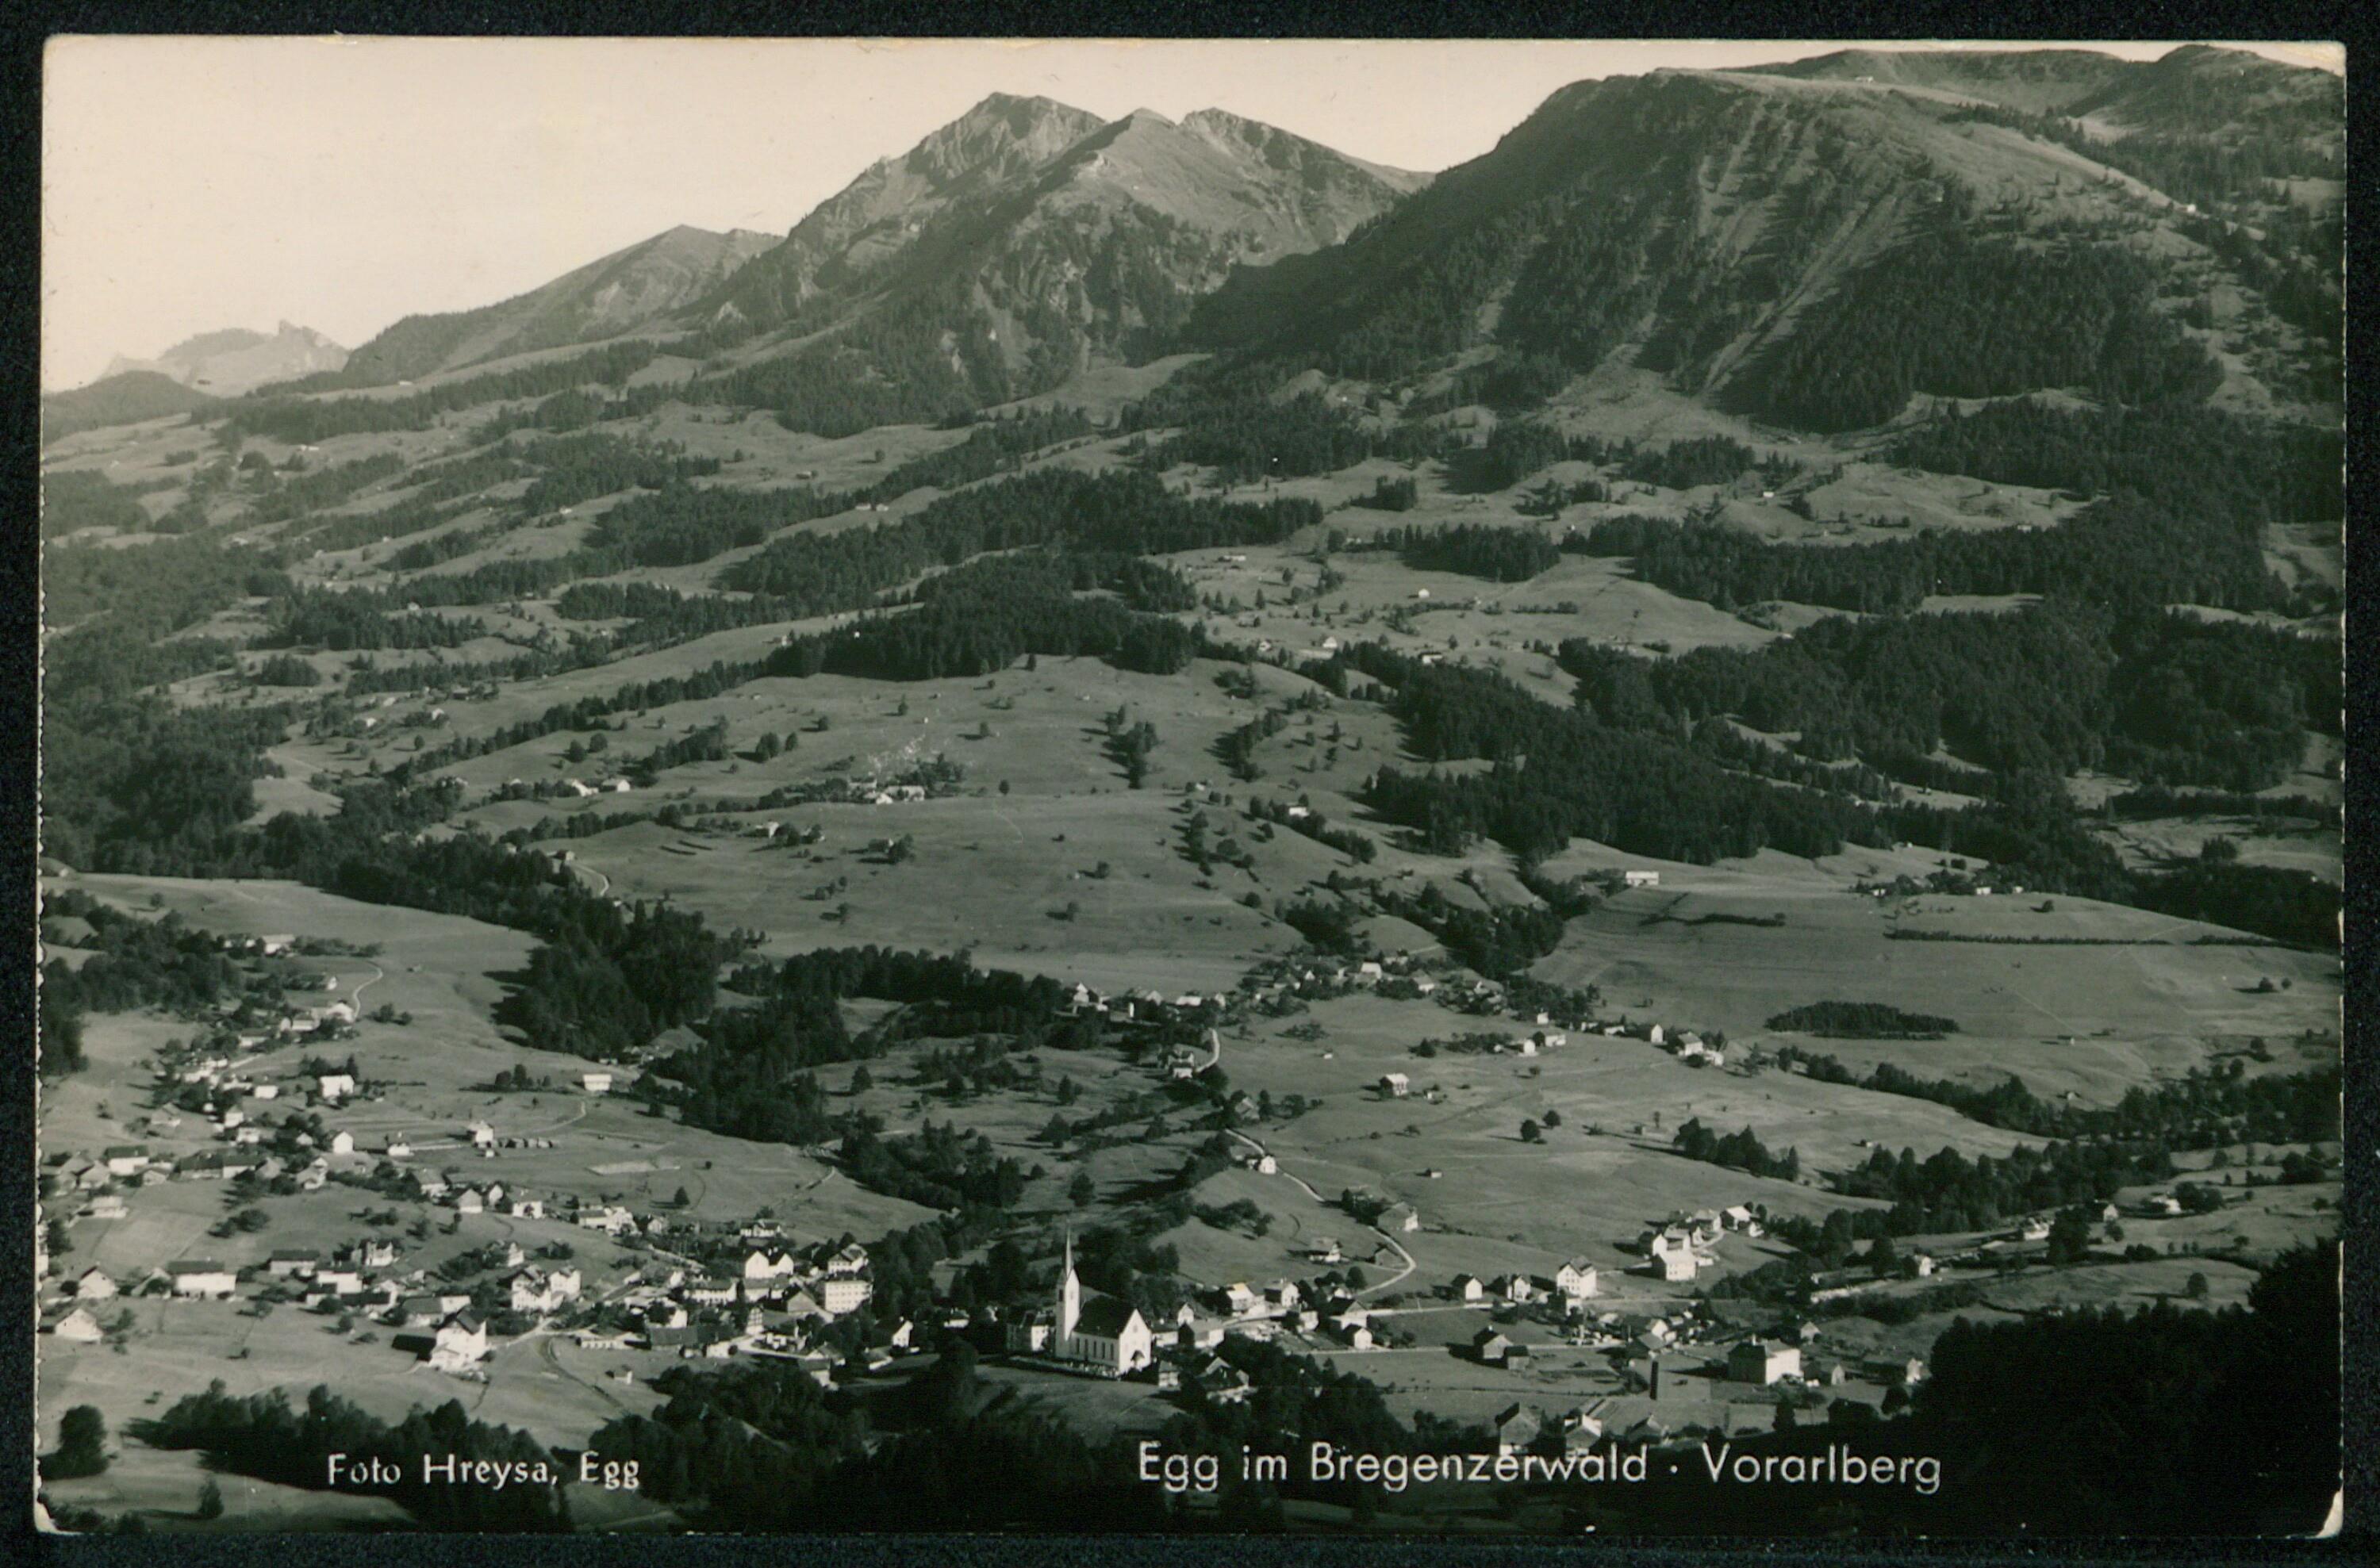 Egg im Bregenzerwald - Vorarlberg></div>


    <hr>
    <div class=